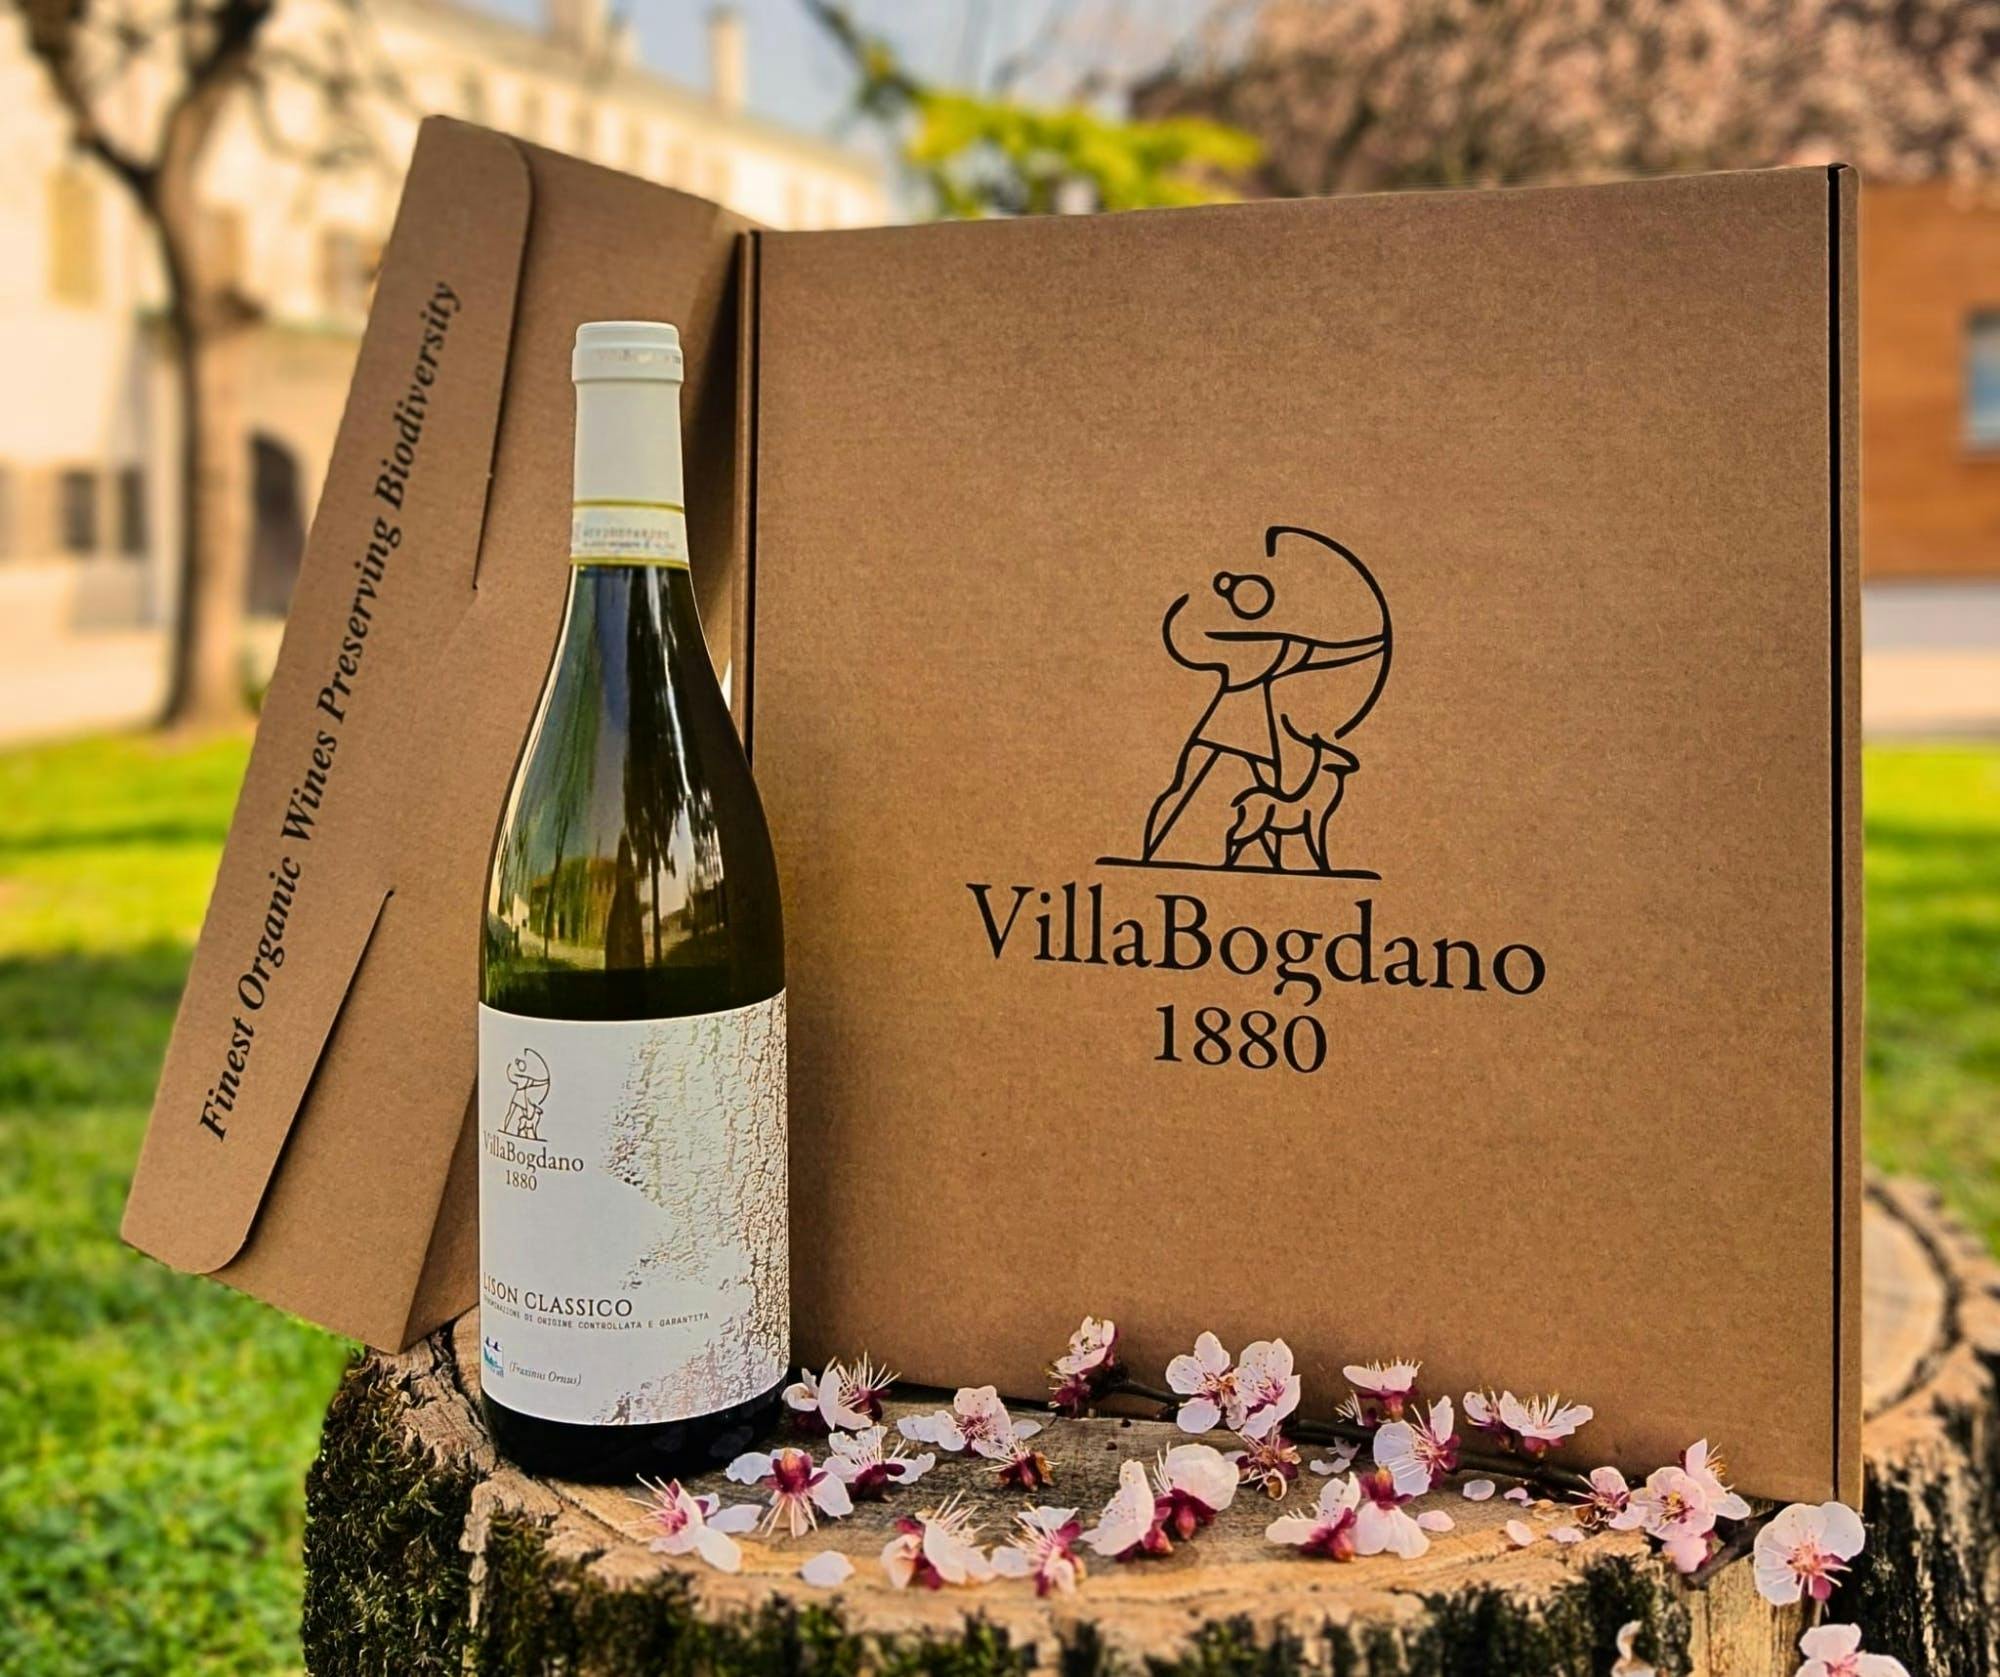 Excursão a pé guiada pelos vinhedos de Villa Bogdano 1880 com degustação de vinhos